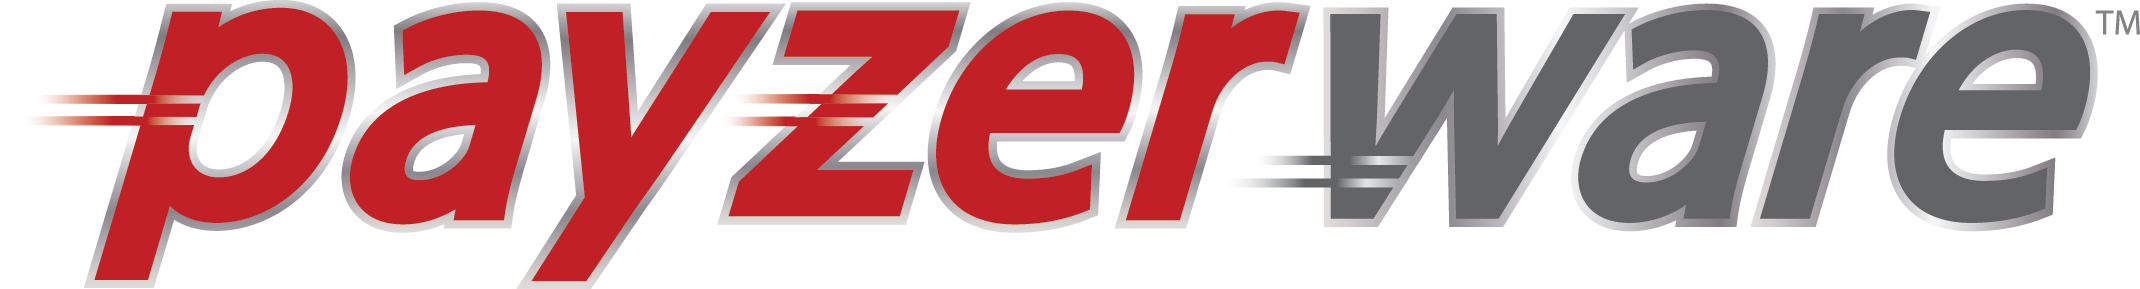 Payzerware Logo